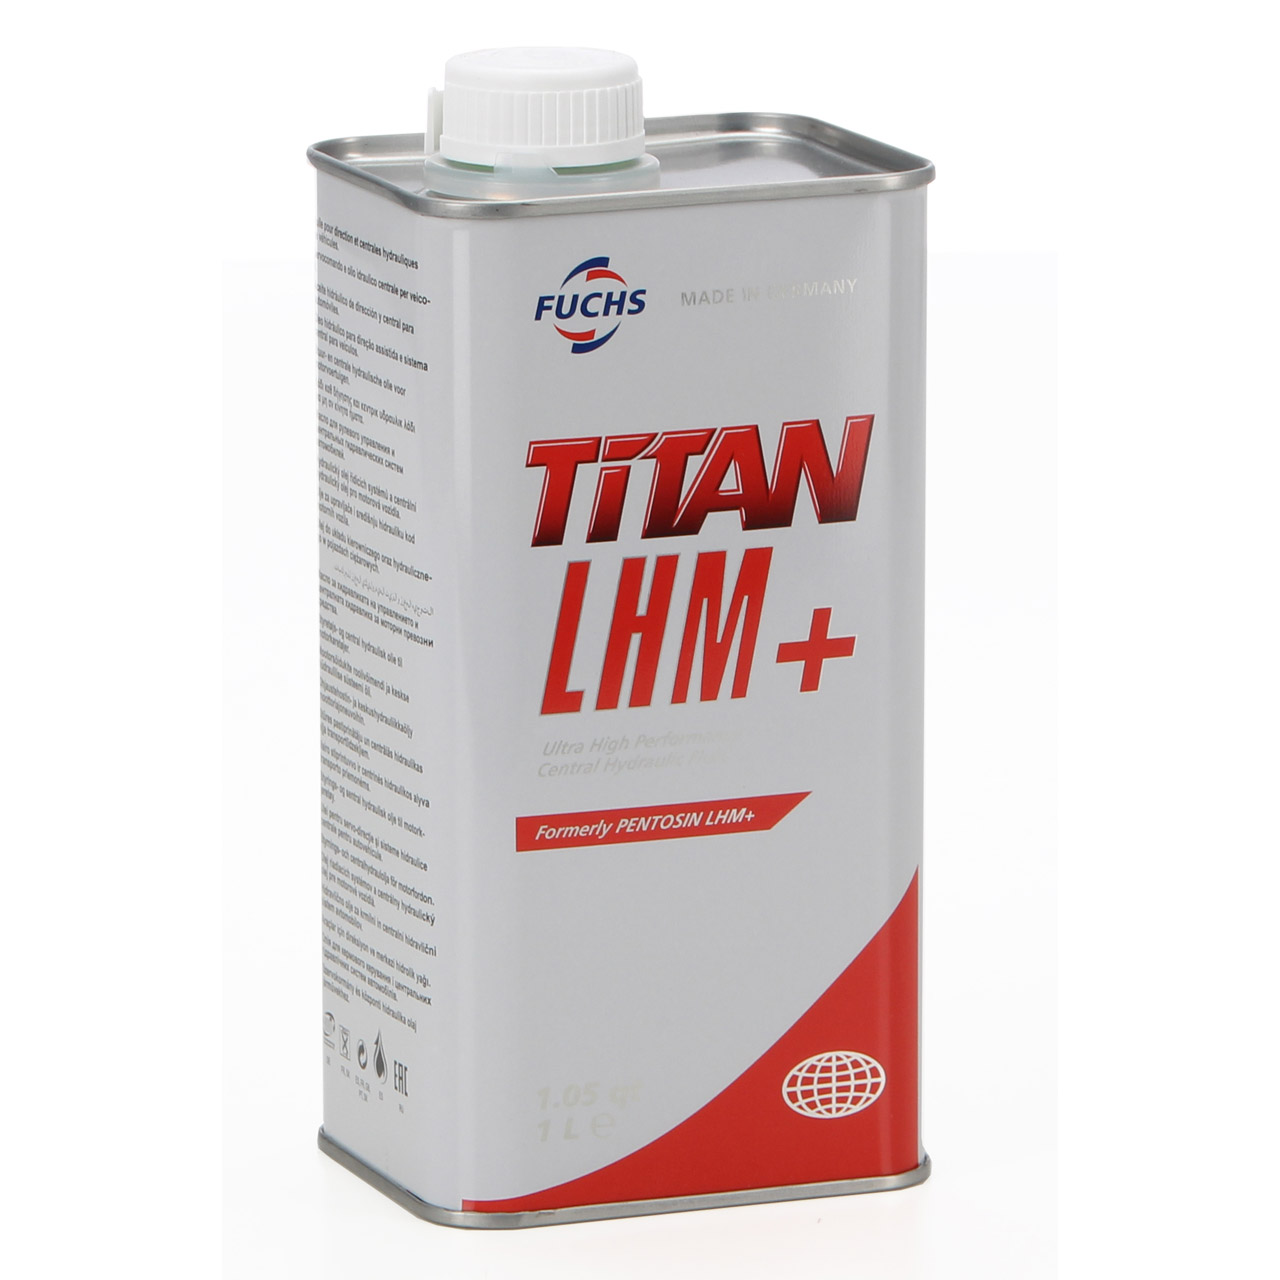 3L 3 Liter FUCHS Pentosin TITAN LHM+ Hydrauliköl Zentralhydrauliköl PSA B71 2710